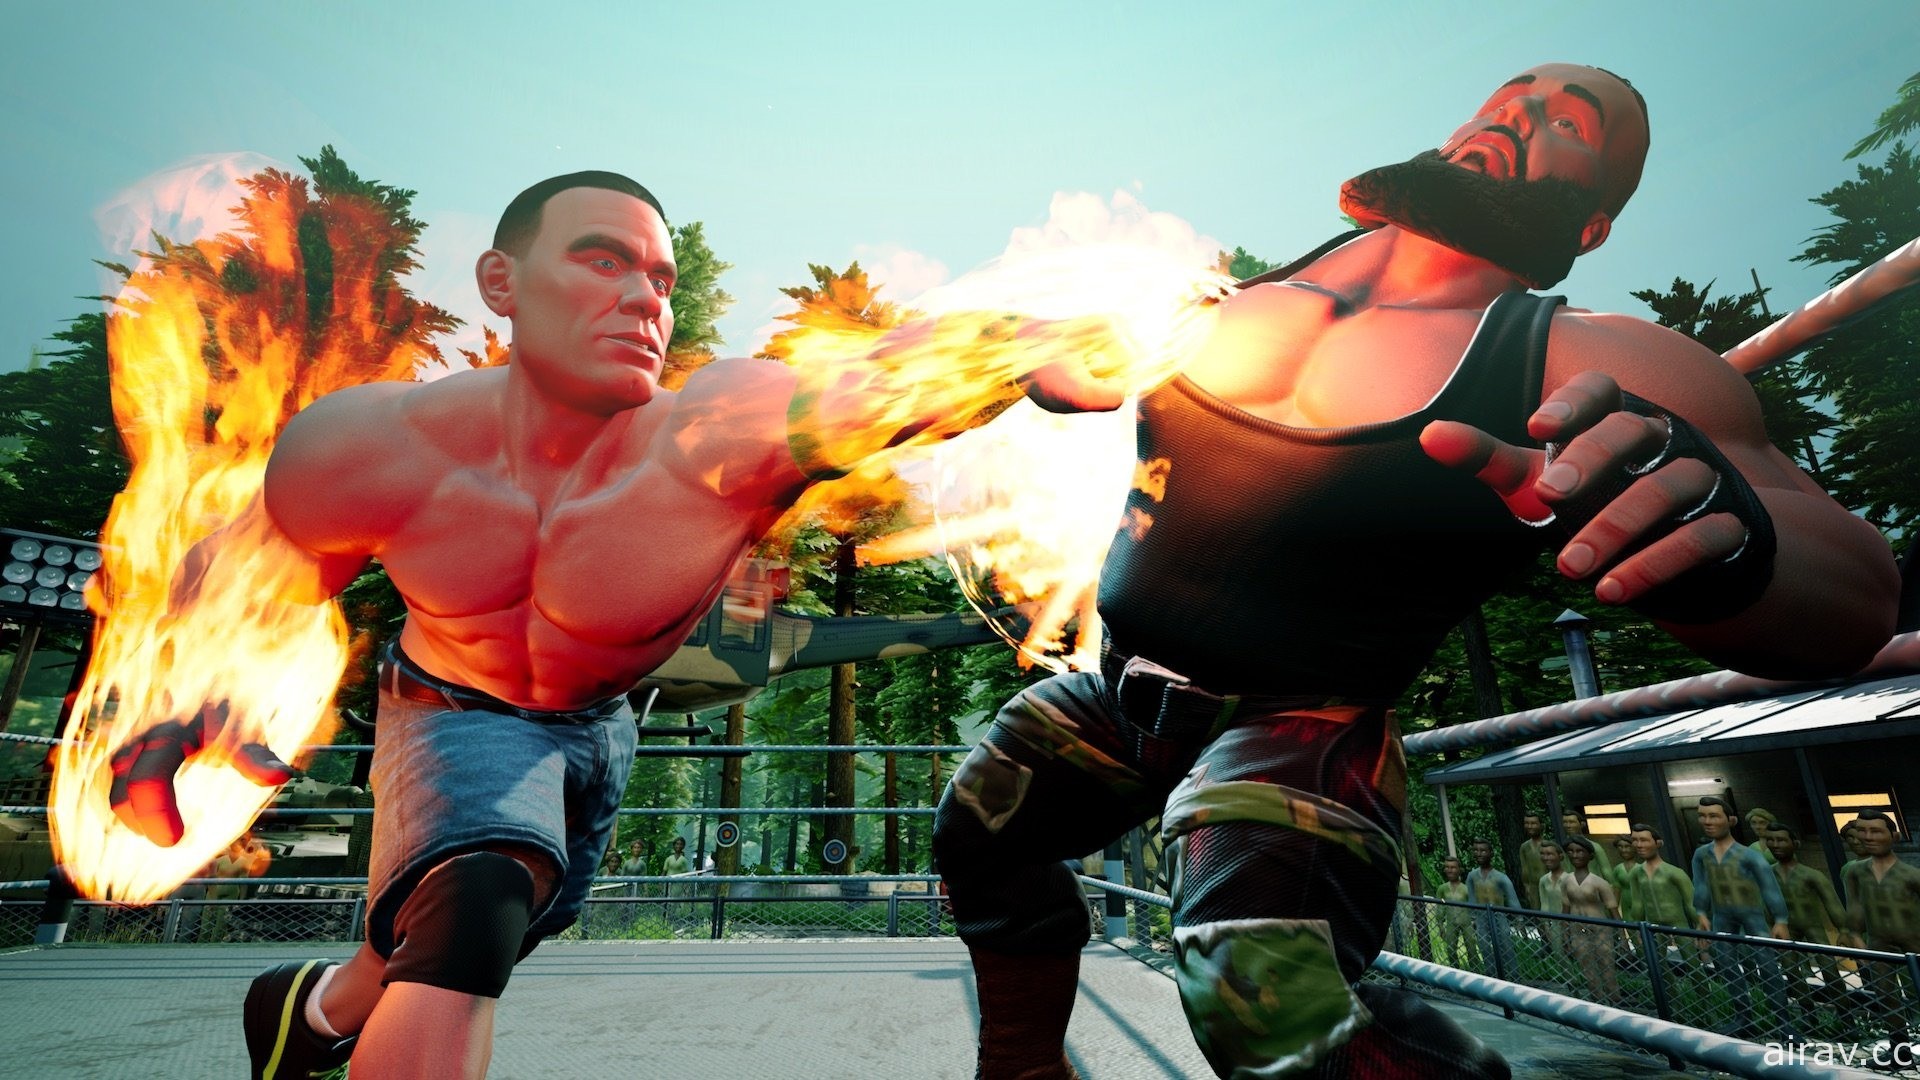 打鬥無極限！超現實激鬥遊戲《WWE 2K 殺戮戰場》今日在亞洲正式發售